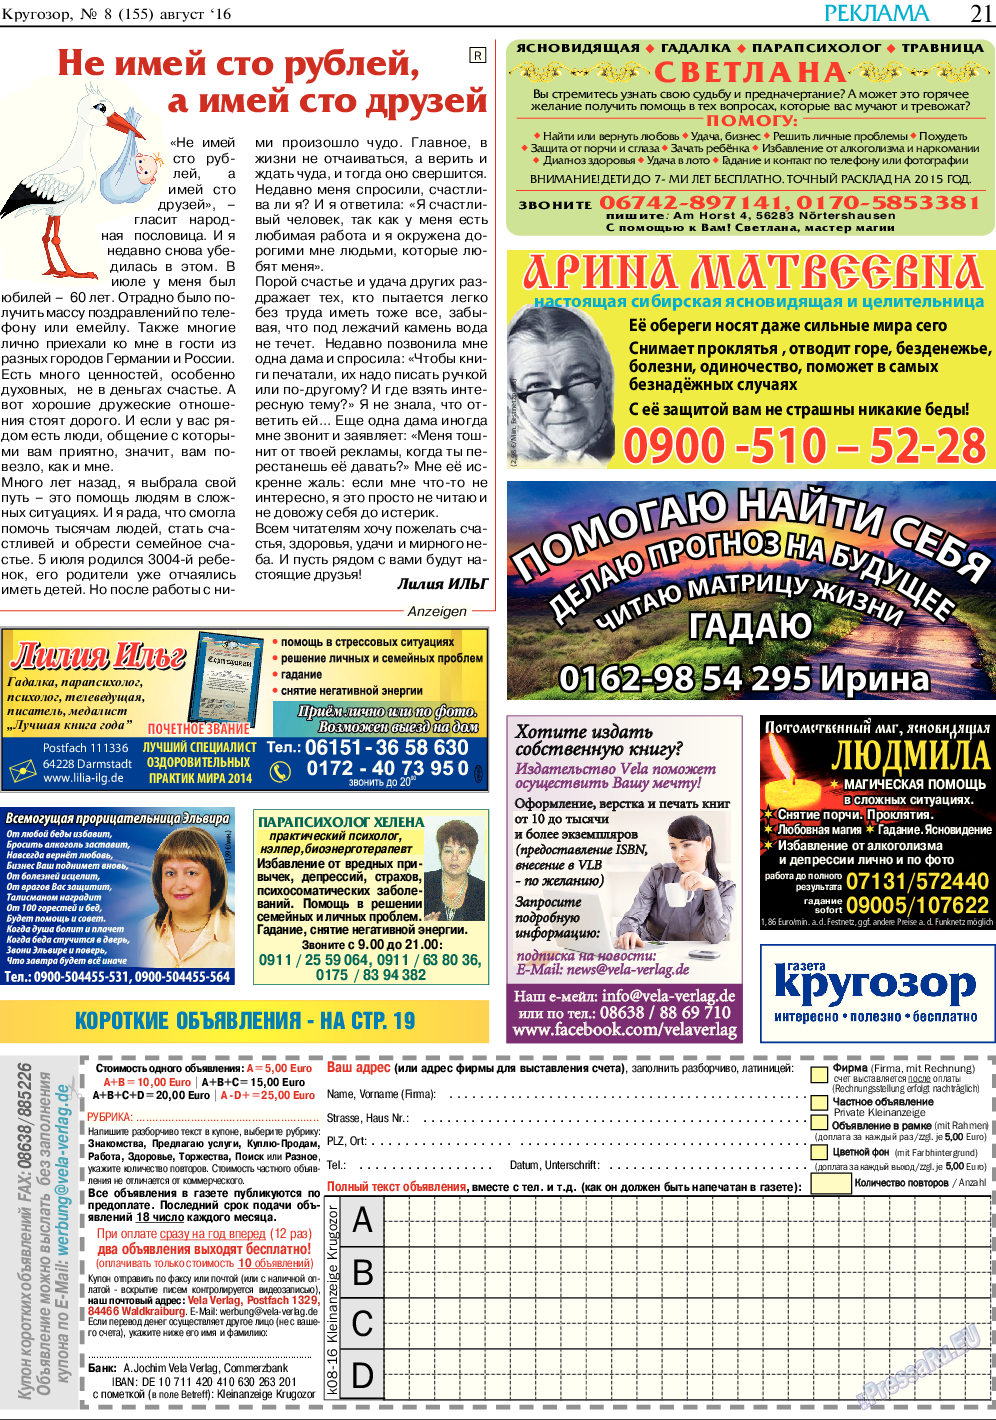 Кругозор, газета. 2016 №8 стр.21